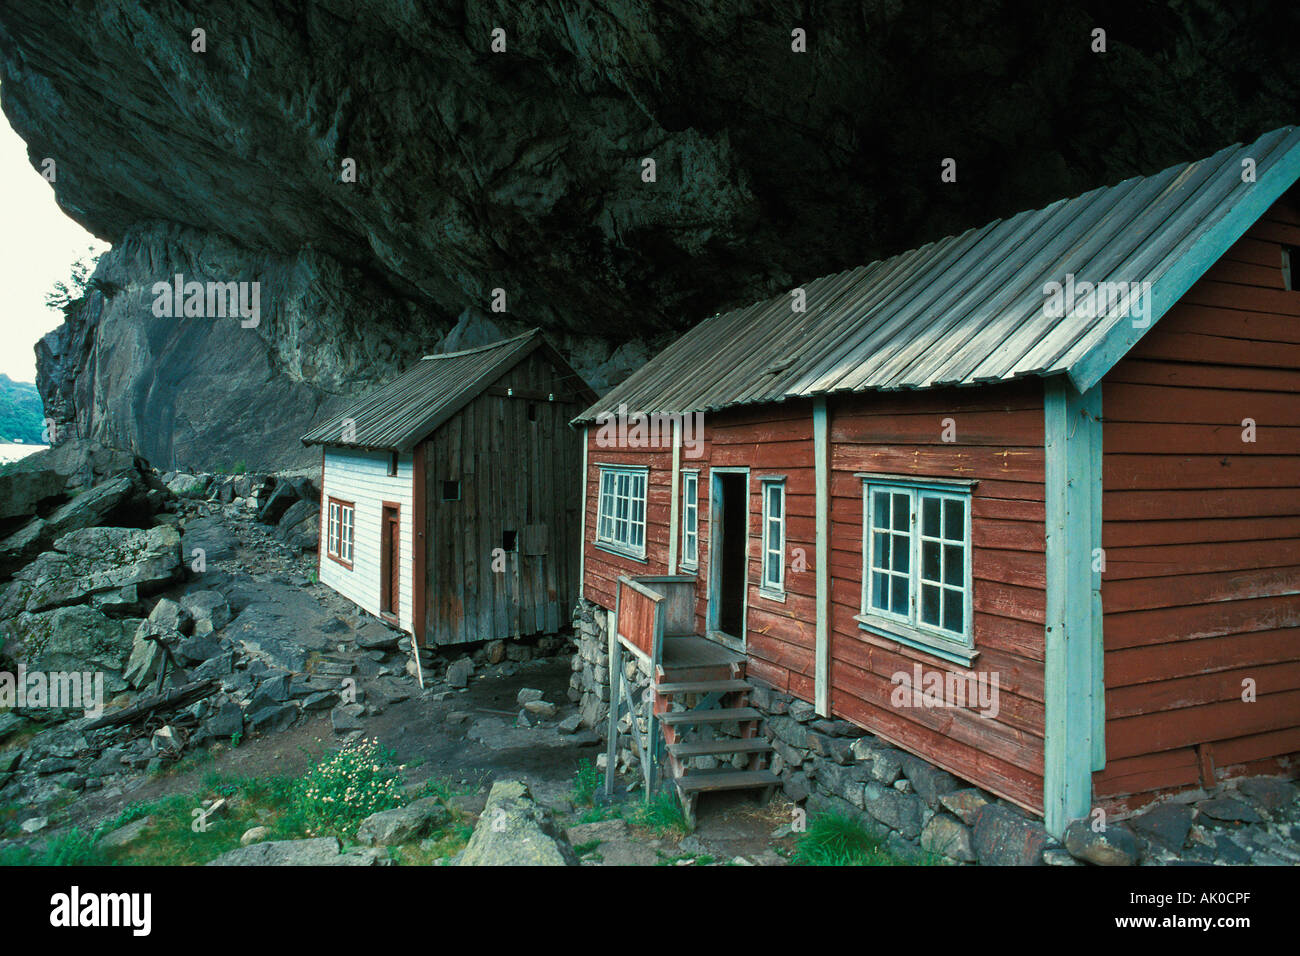 Houses under ledge / Haeuser unter Felsvorsprung Stock Photo